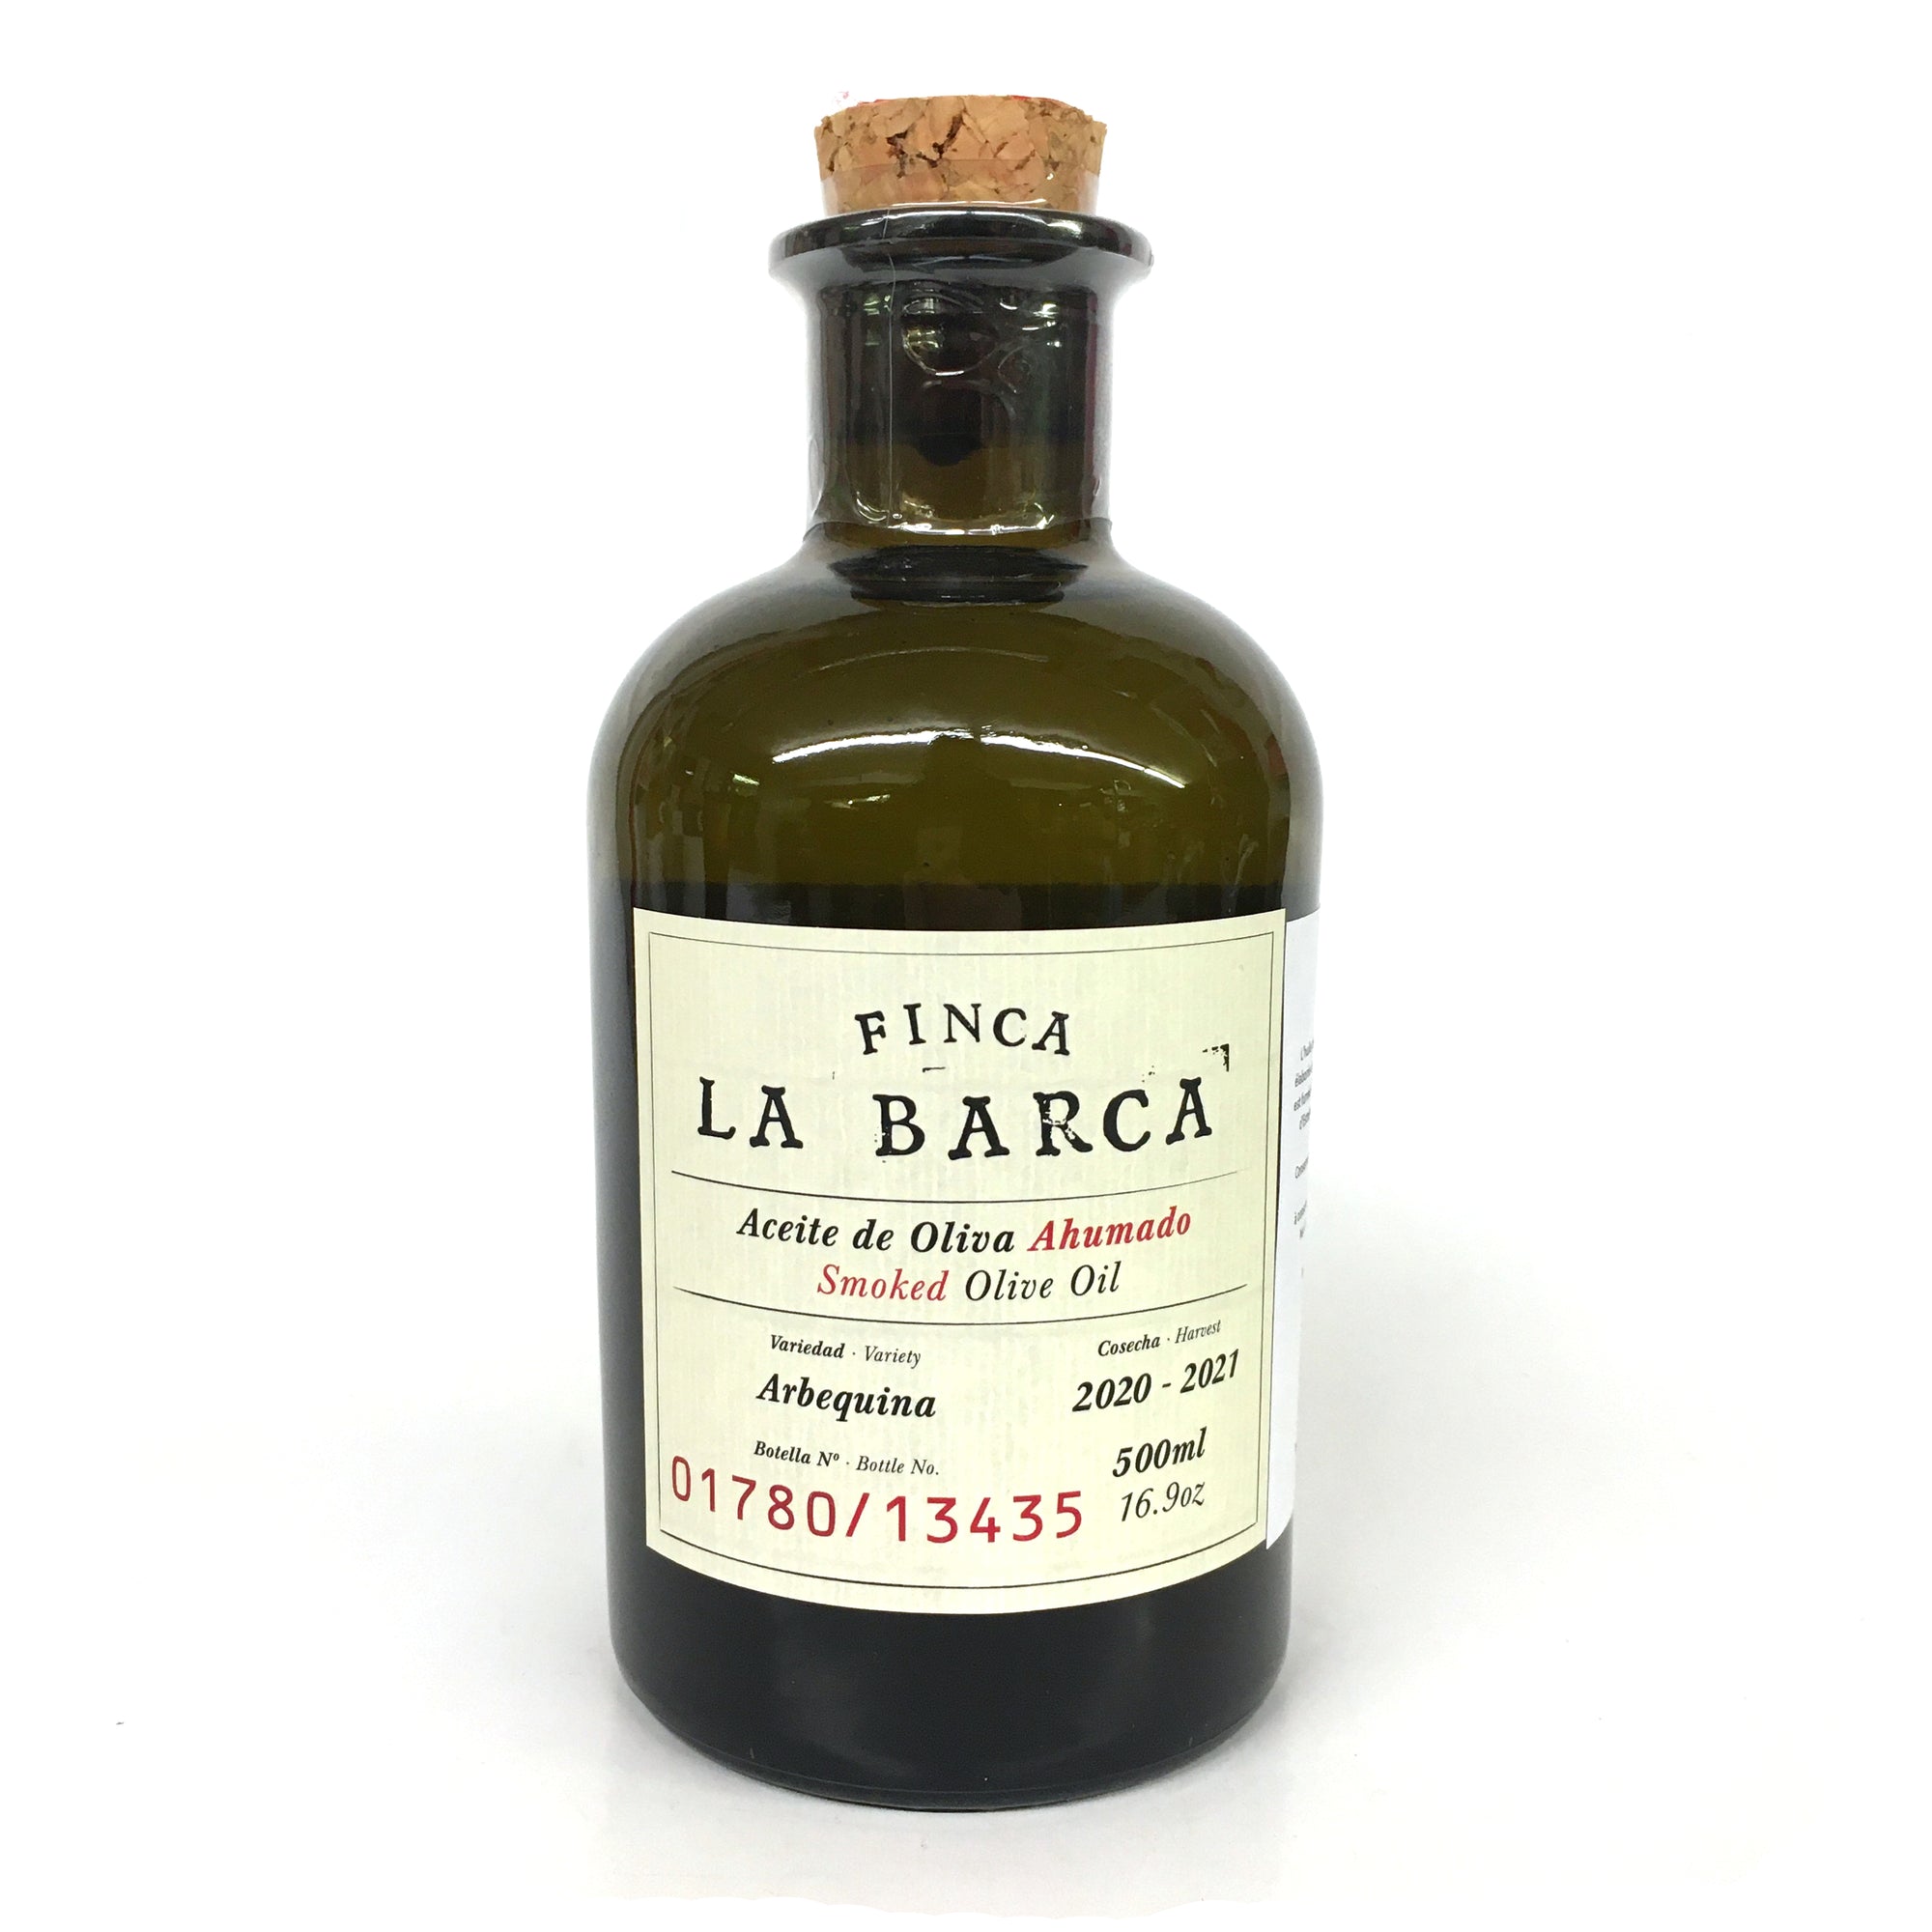 Finca La Barca Smoked Olive Oil - 500ml